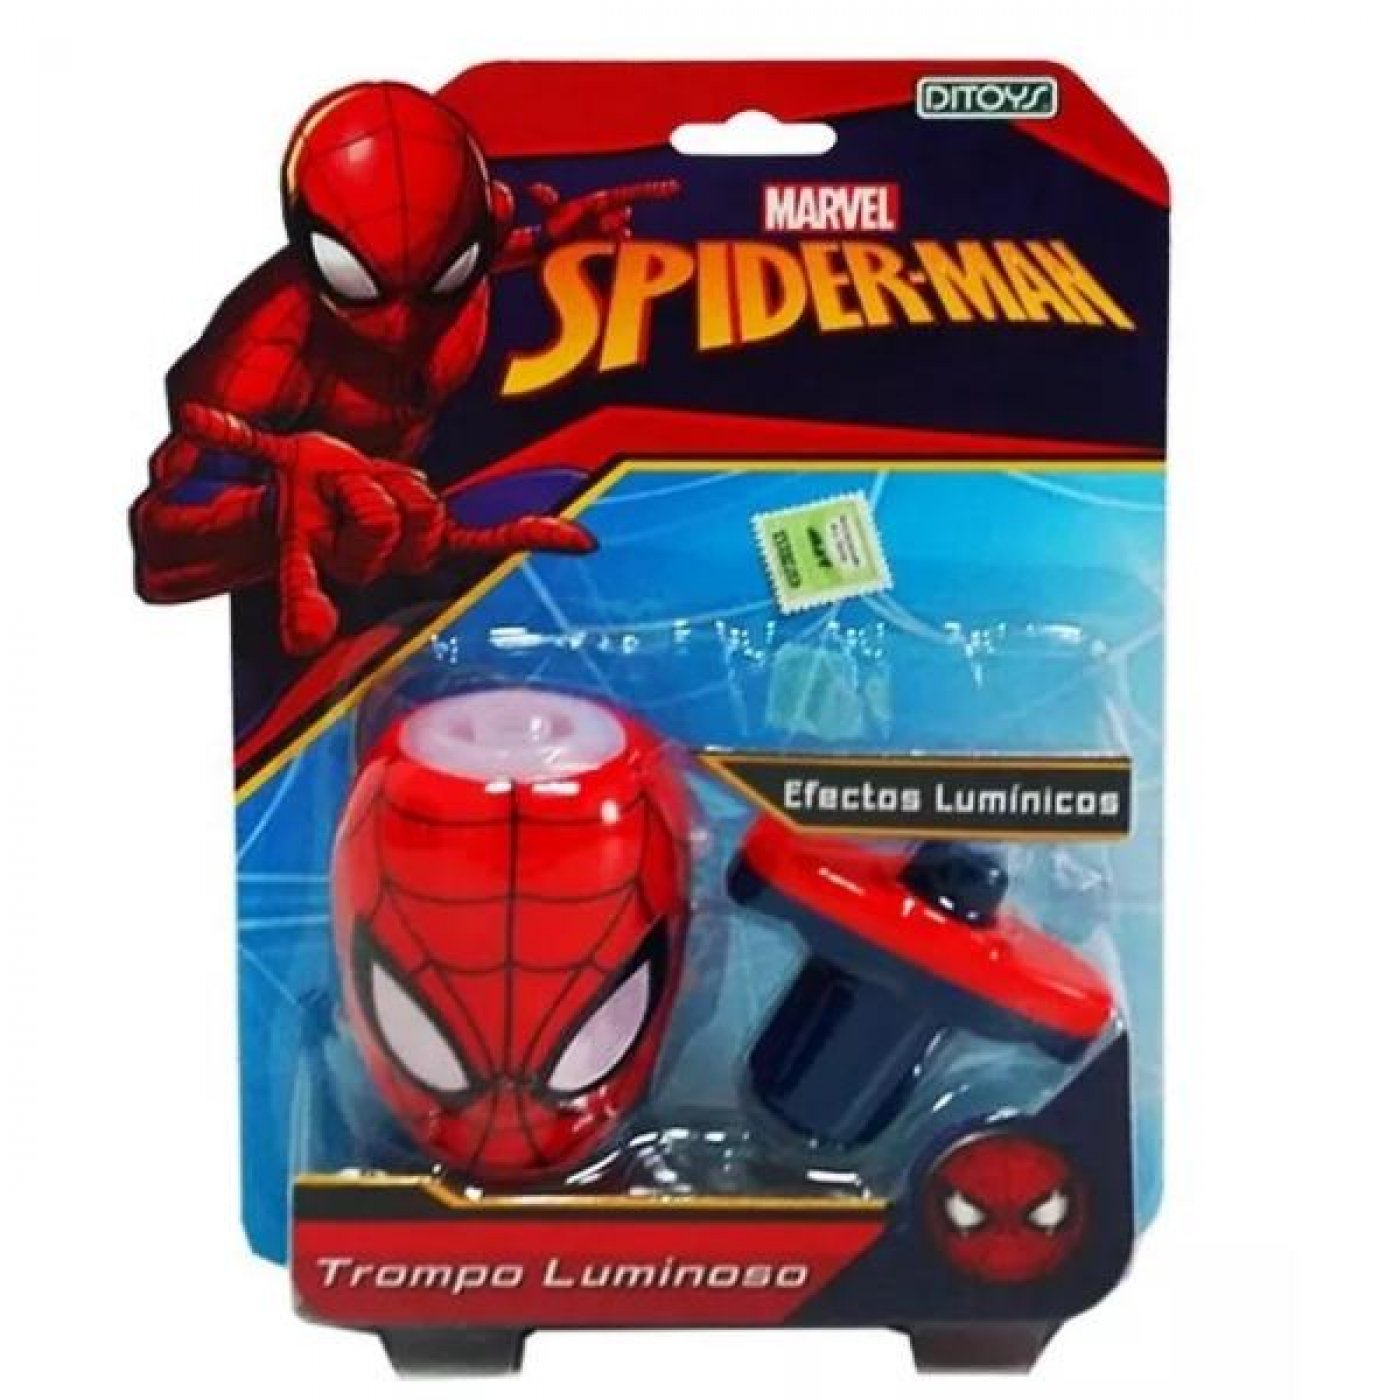 Trompo Spiderman efectos lumínicos.Original de Ditoys